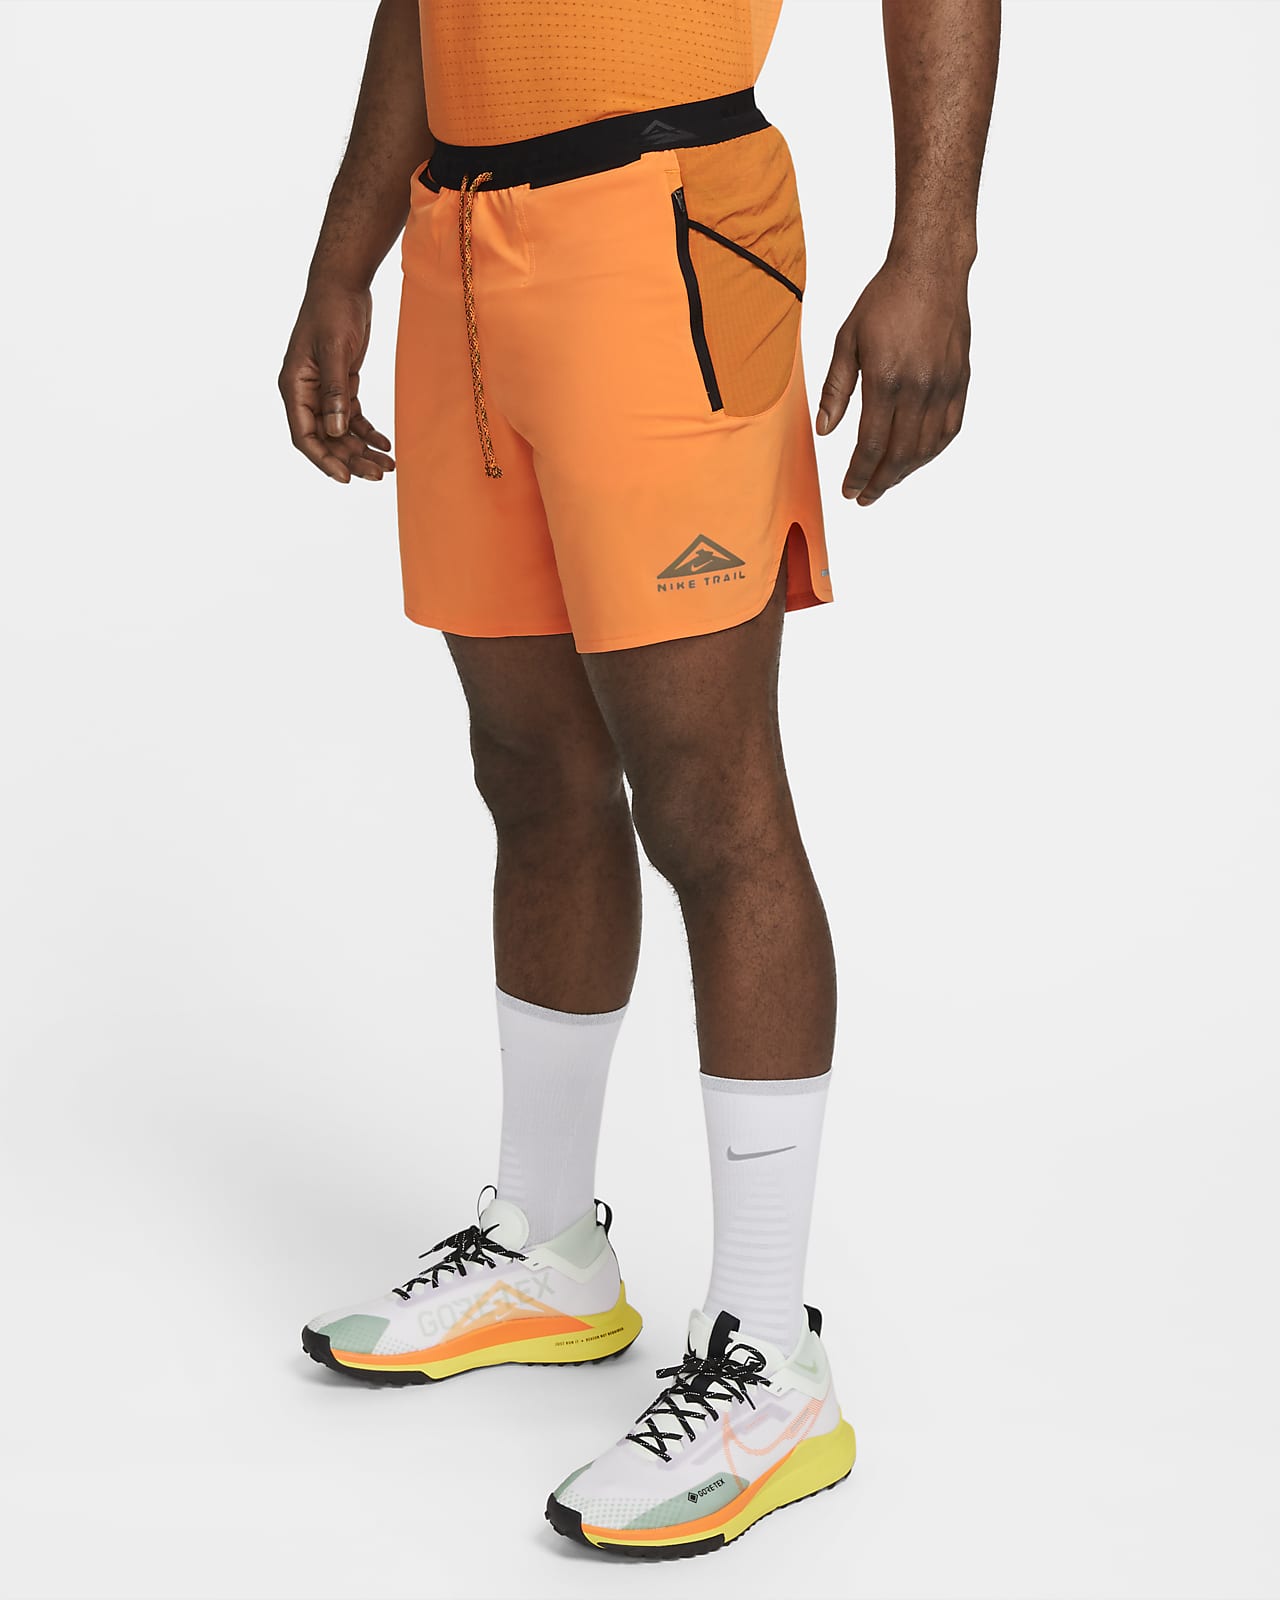 Laboratorio A veces donante Shorts de running con forro de ropa interior Dri-FIT de 18 cm para hombre  Nike Trail Second Sunrise. Nike.com